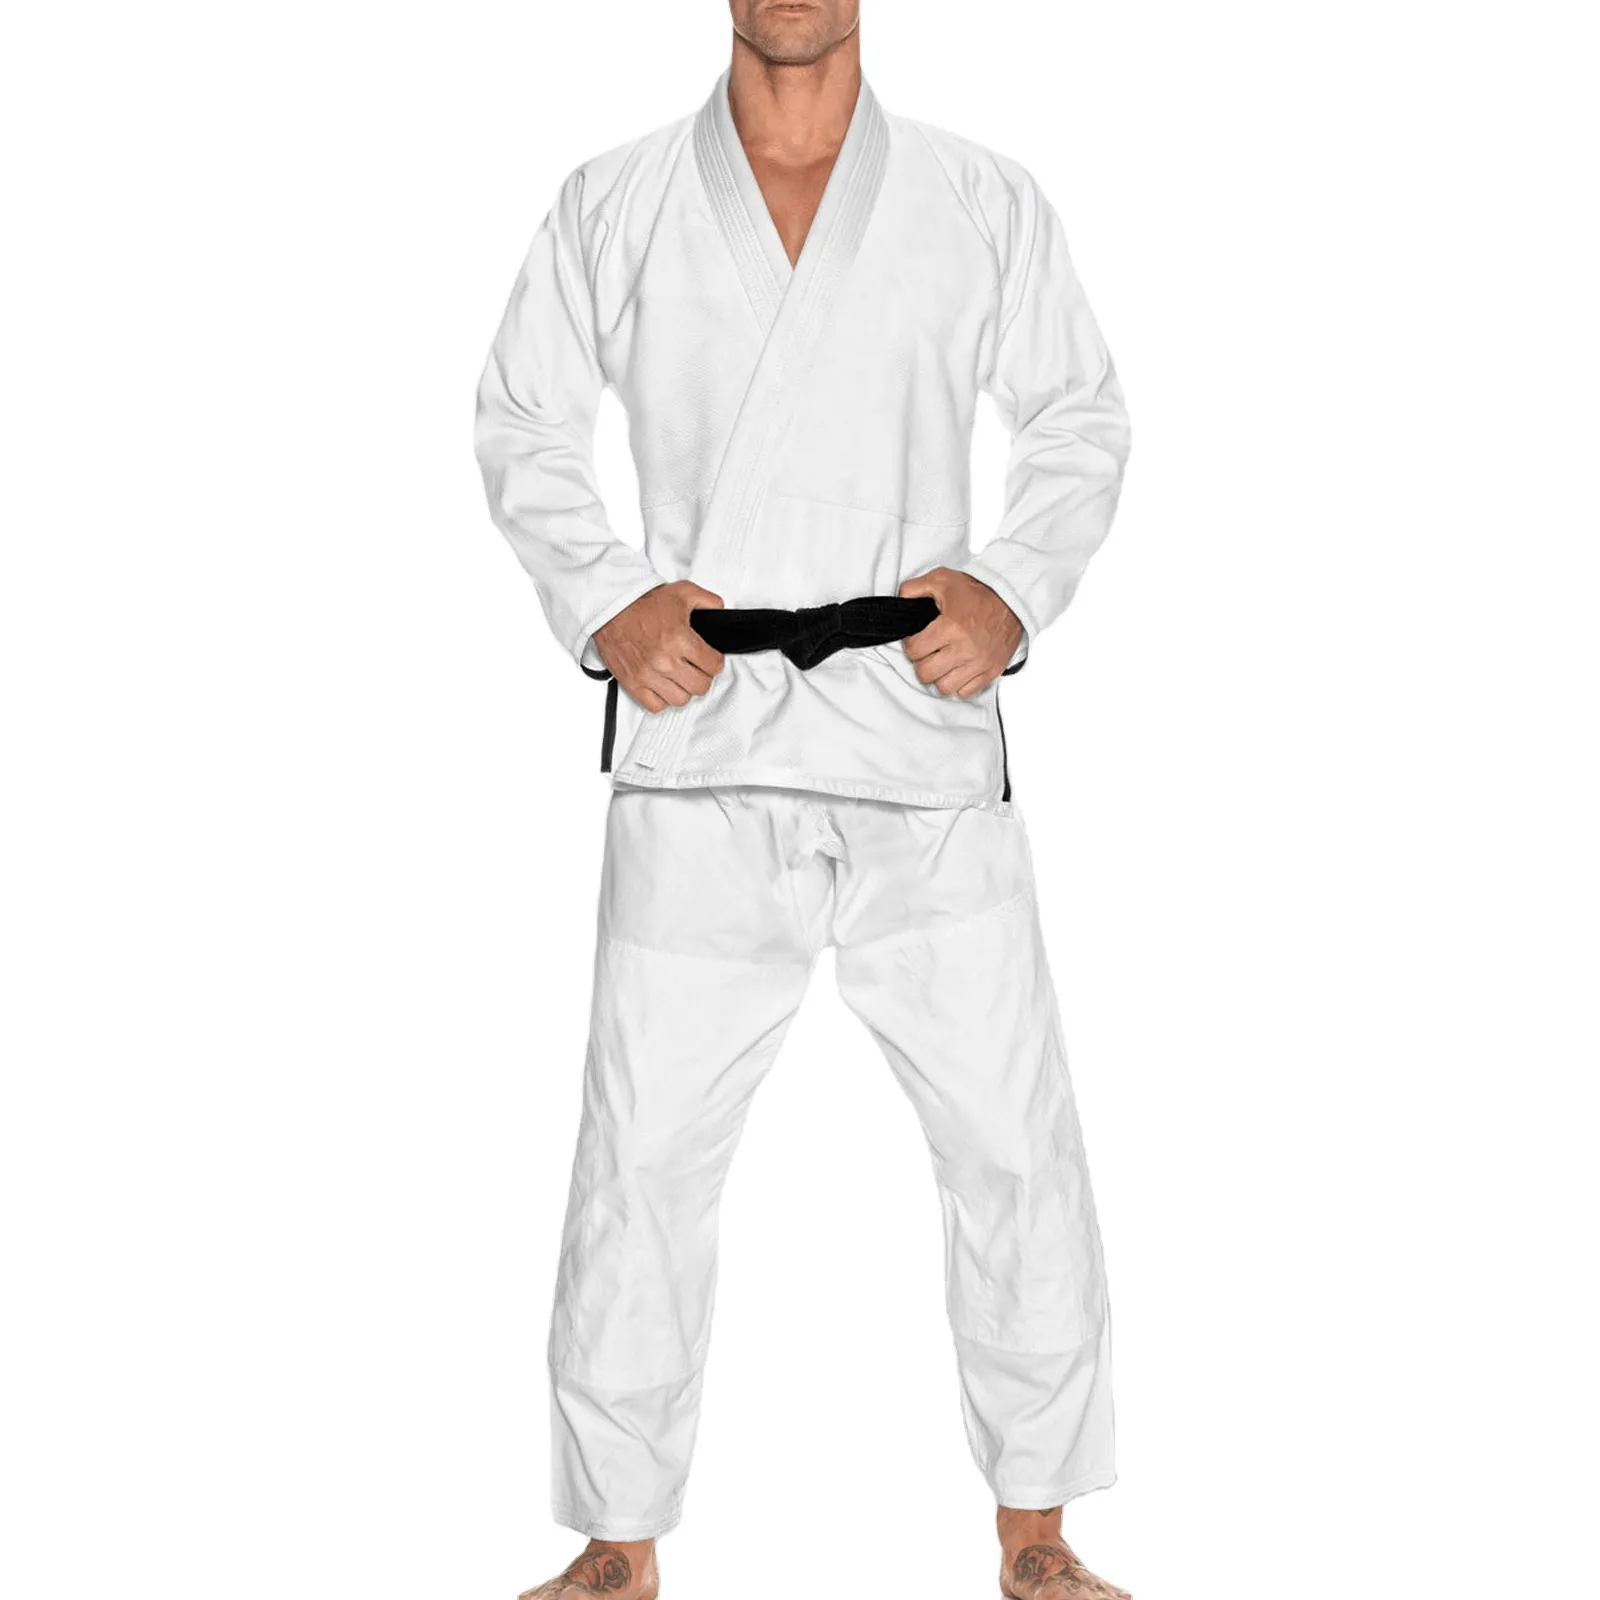 Jiu Jitsu üniforma Unisex JiuJitsu Gi üniforma dövüş sanatları üniforma brezilyalı bjj Gi jiujitsu toptan düşük fiyat